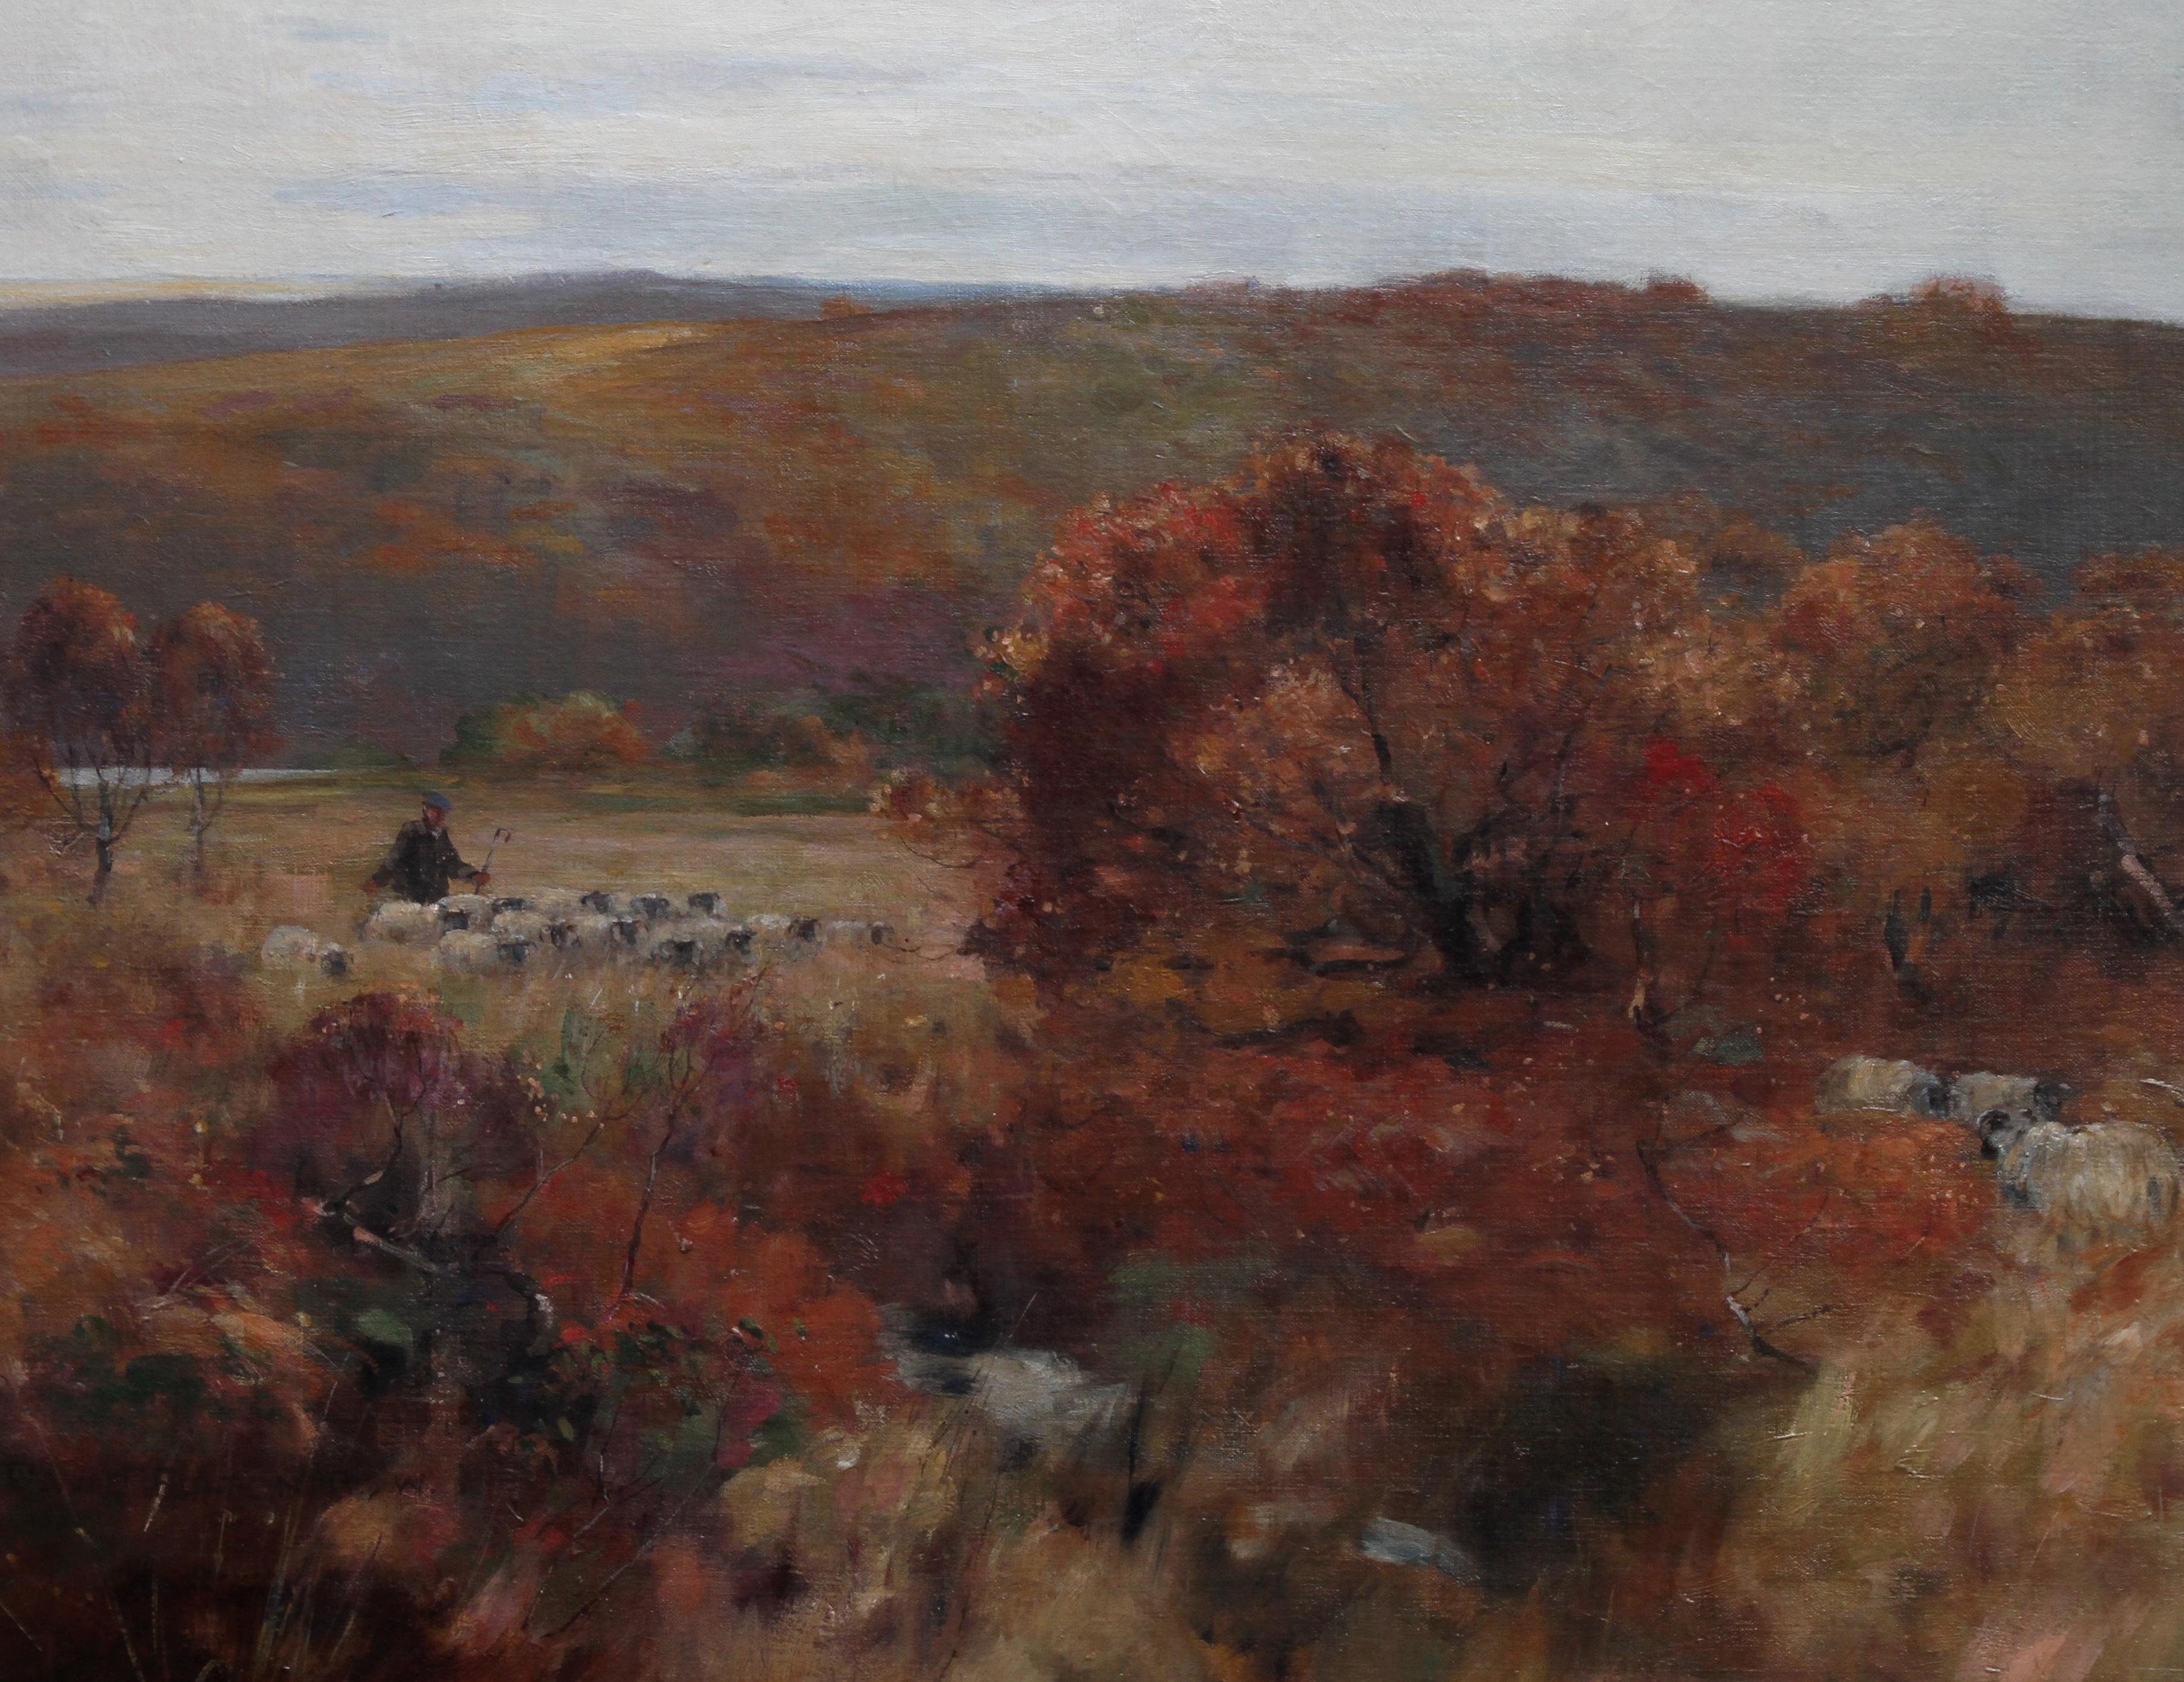 Dieses schöne Ölgemälde einer schottischen impressionistischen Landschaft stammt von dem bekannten Künstler David Fulton RWS. Es wurde um 1900 gemalt und zeigt eine pastorale Landschaft mit einem Schäfer und seiner Herde. Die Palette ist reich an